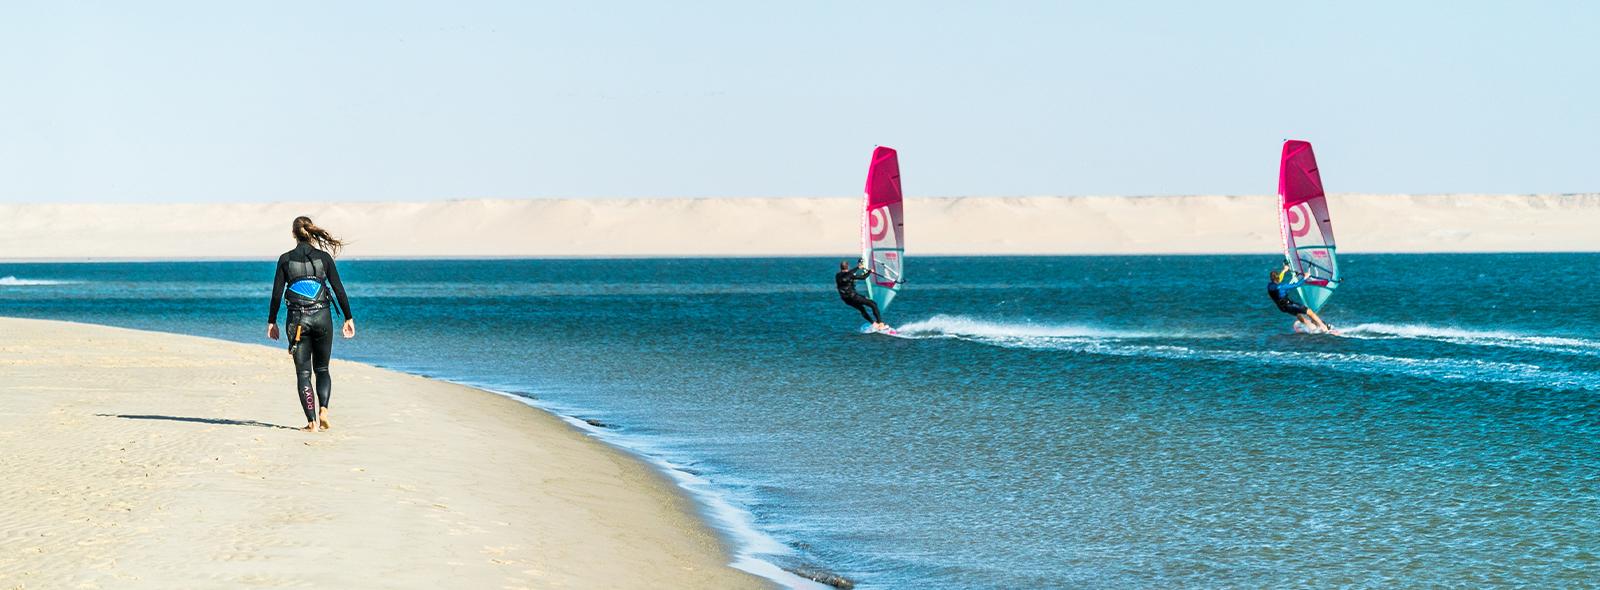 windsurf sur le spot de dakhla lagune